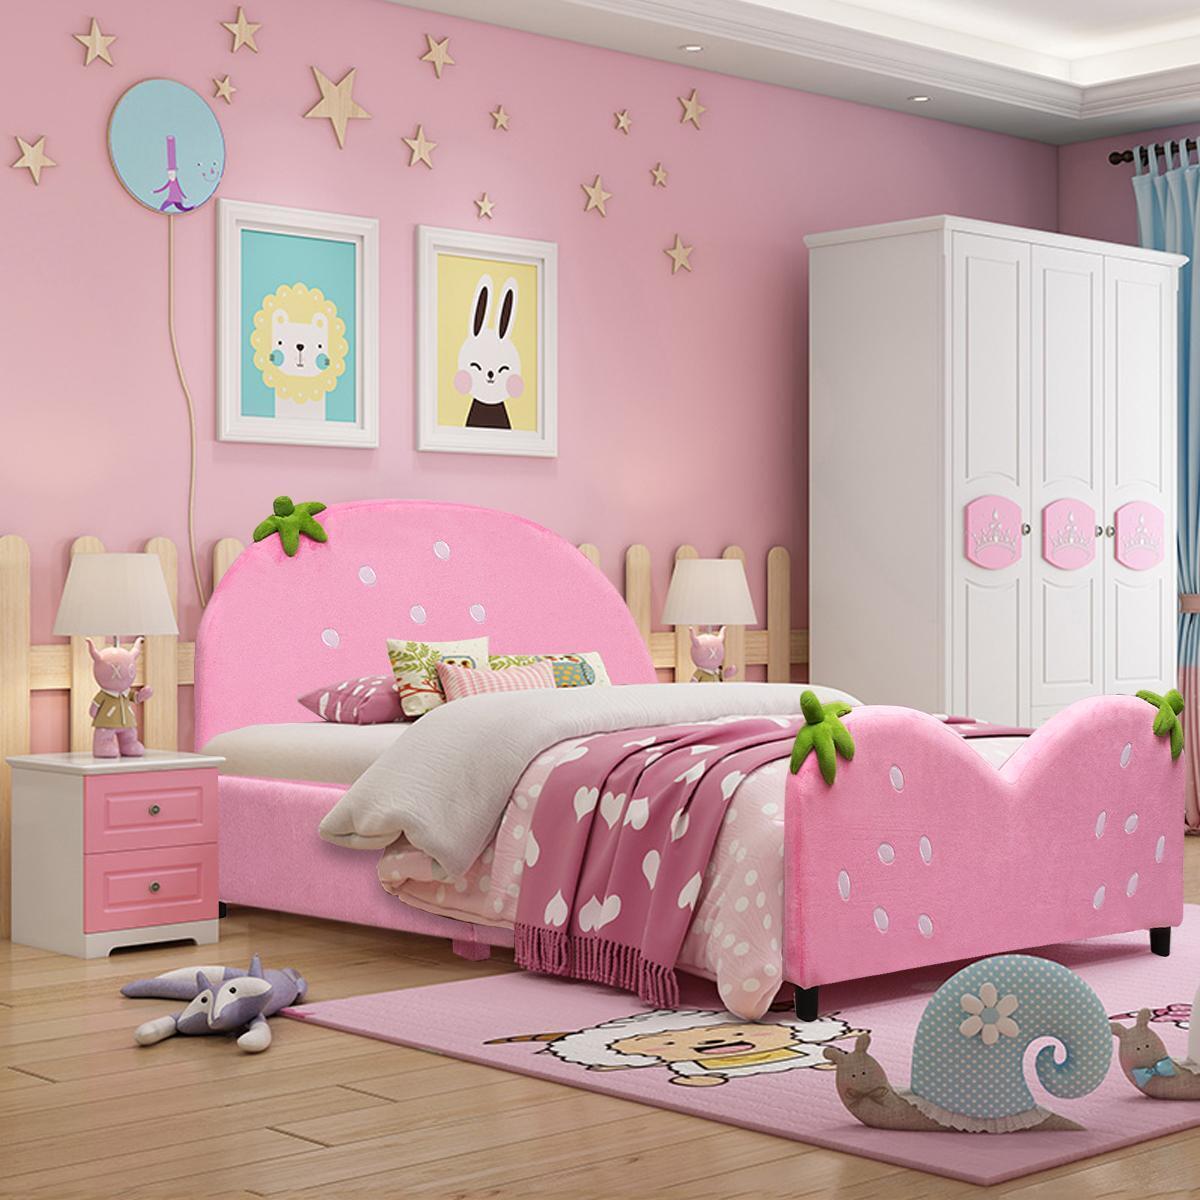 Costway Kids Children Upholstered Platform Toddler Bed Bedroom Furniture Berry Pattern